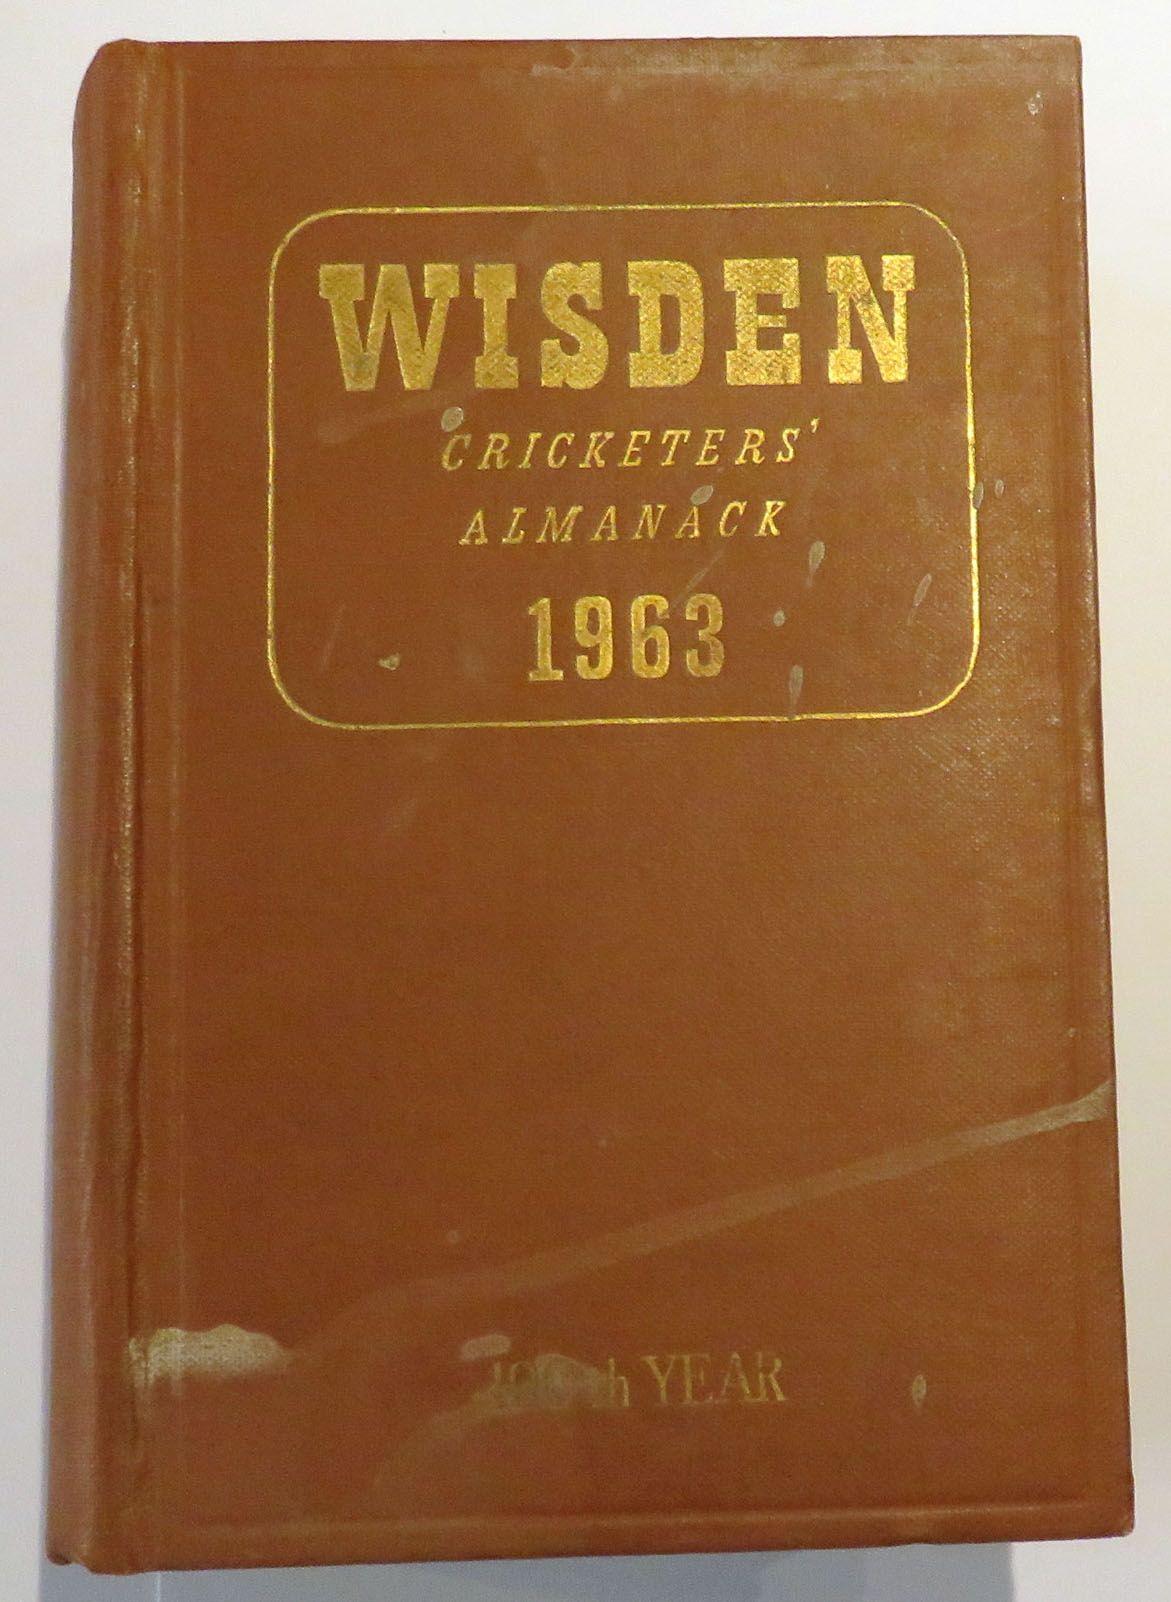 Wisden Cricketers' Almanack 1963